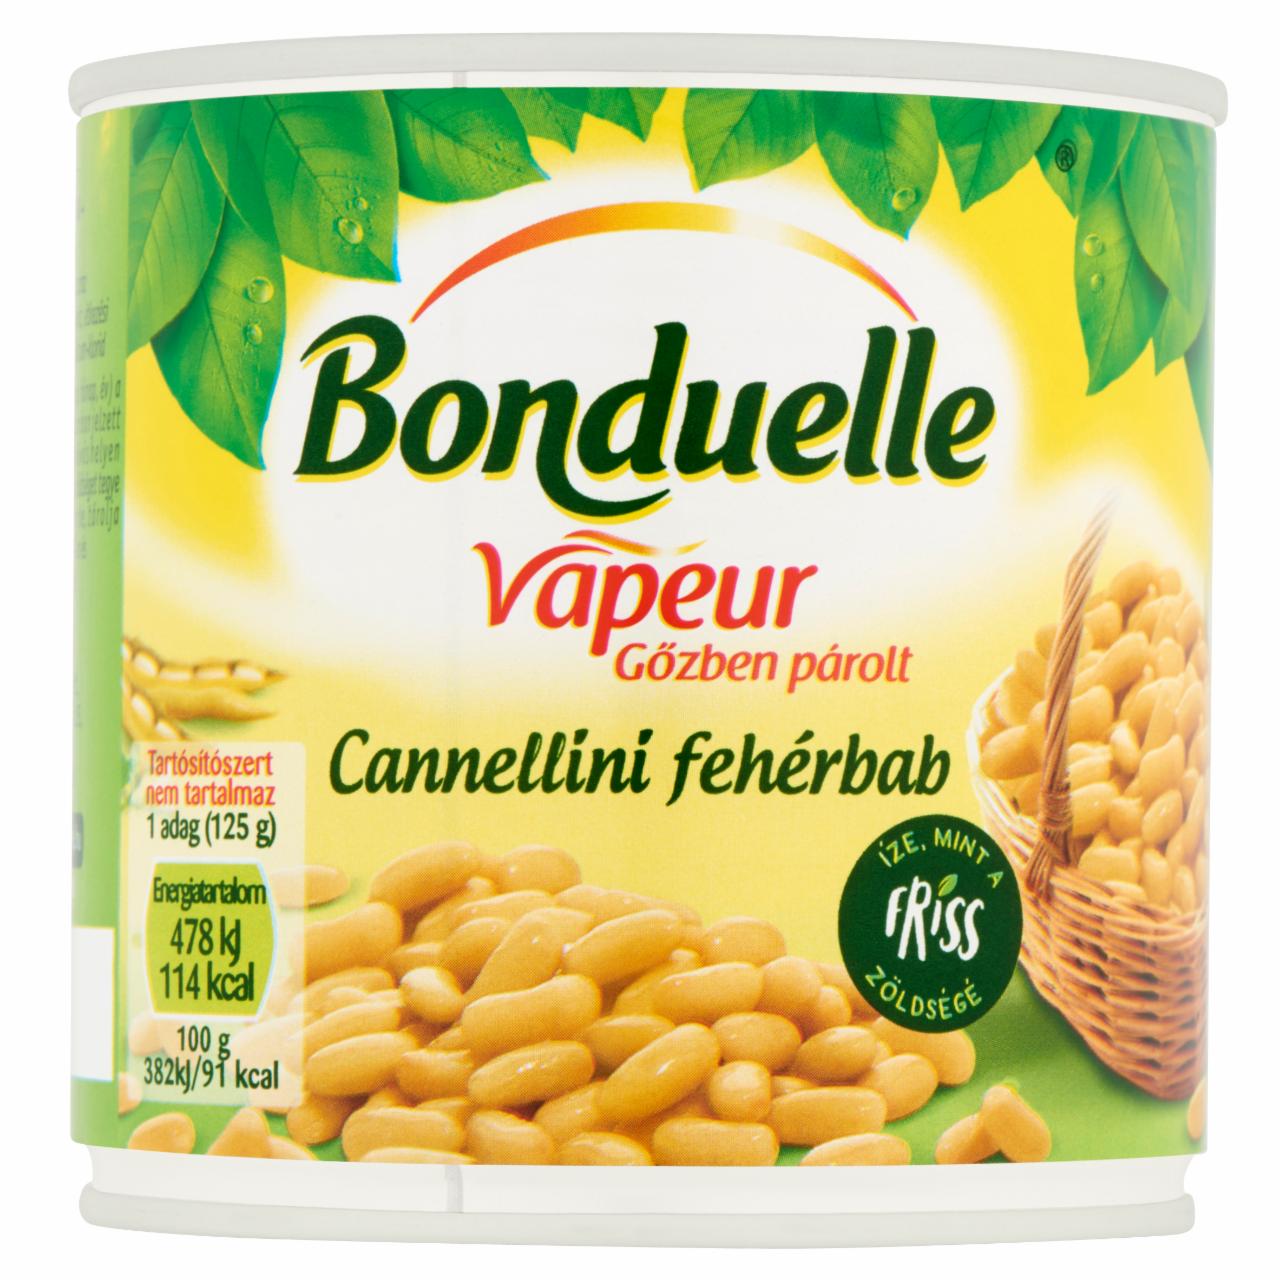 Képek - Bonduelle Vapeur gőzben párolt cannellini fehérbab 310 g